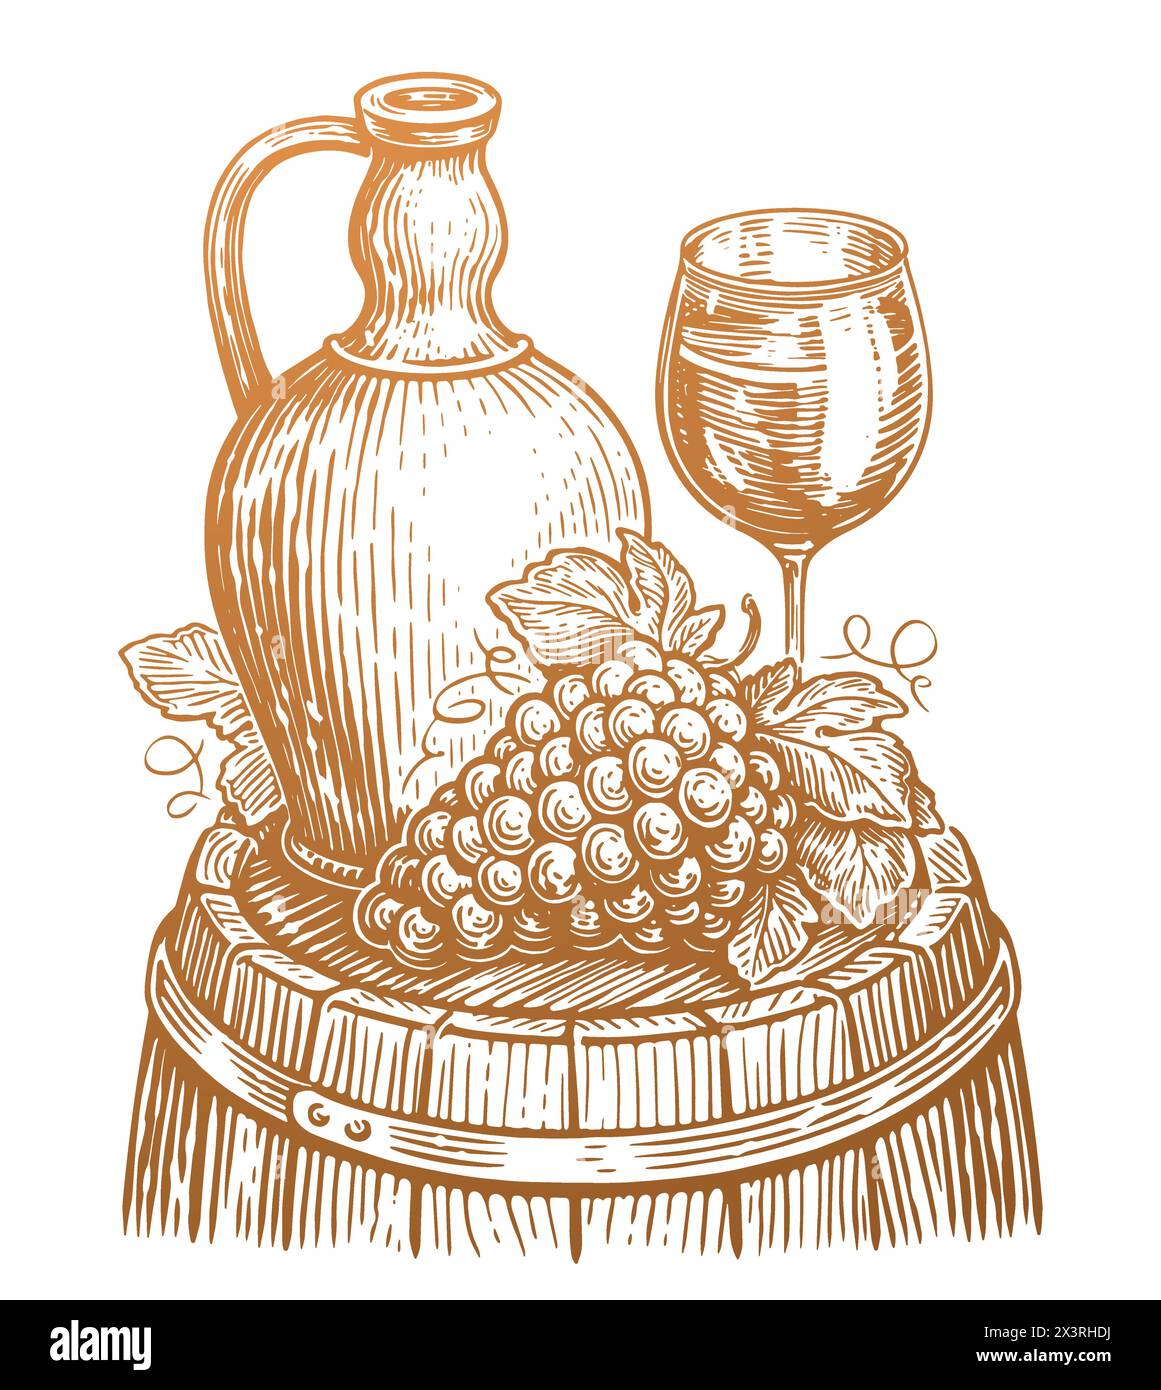 Concept de boisson au vin. Illustration vectorielle vintage dessinée à la main. Cave, croquis de vignoble Illustration de Vecteur